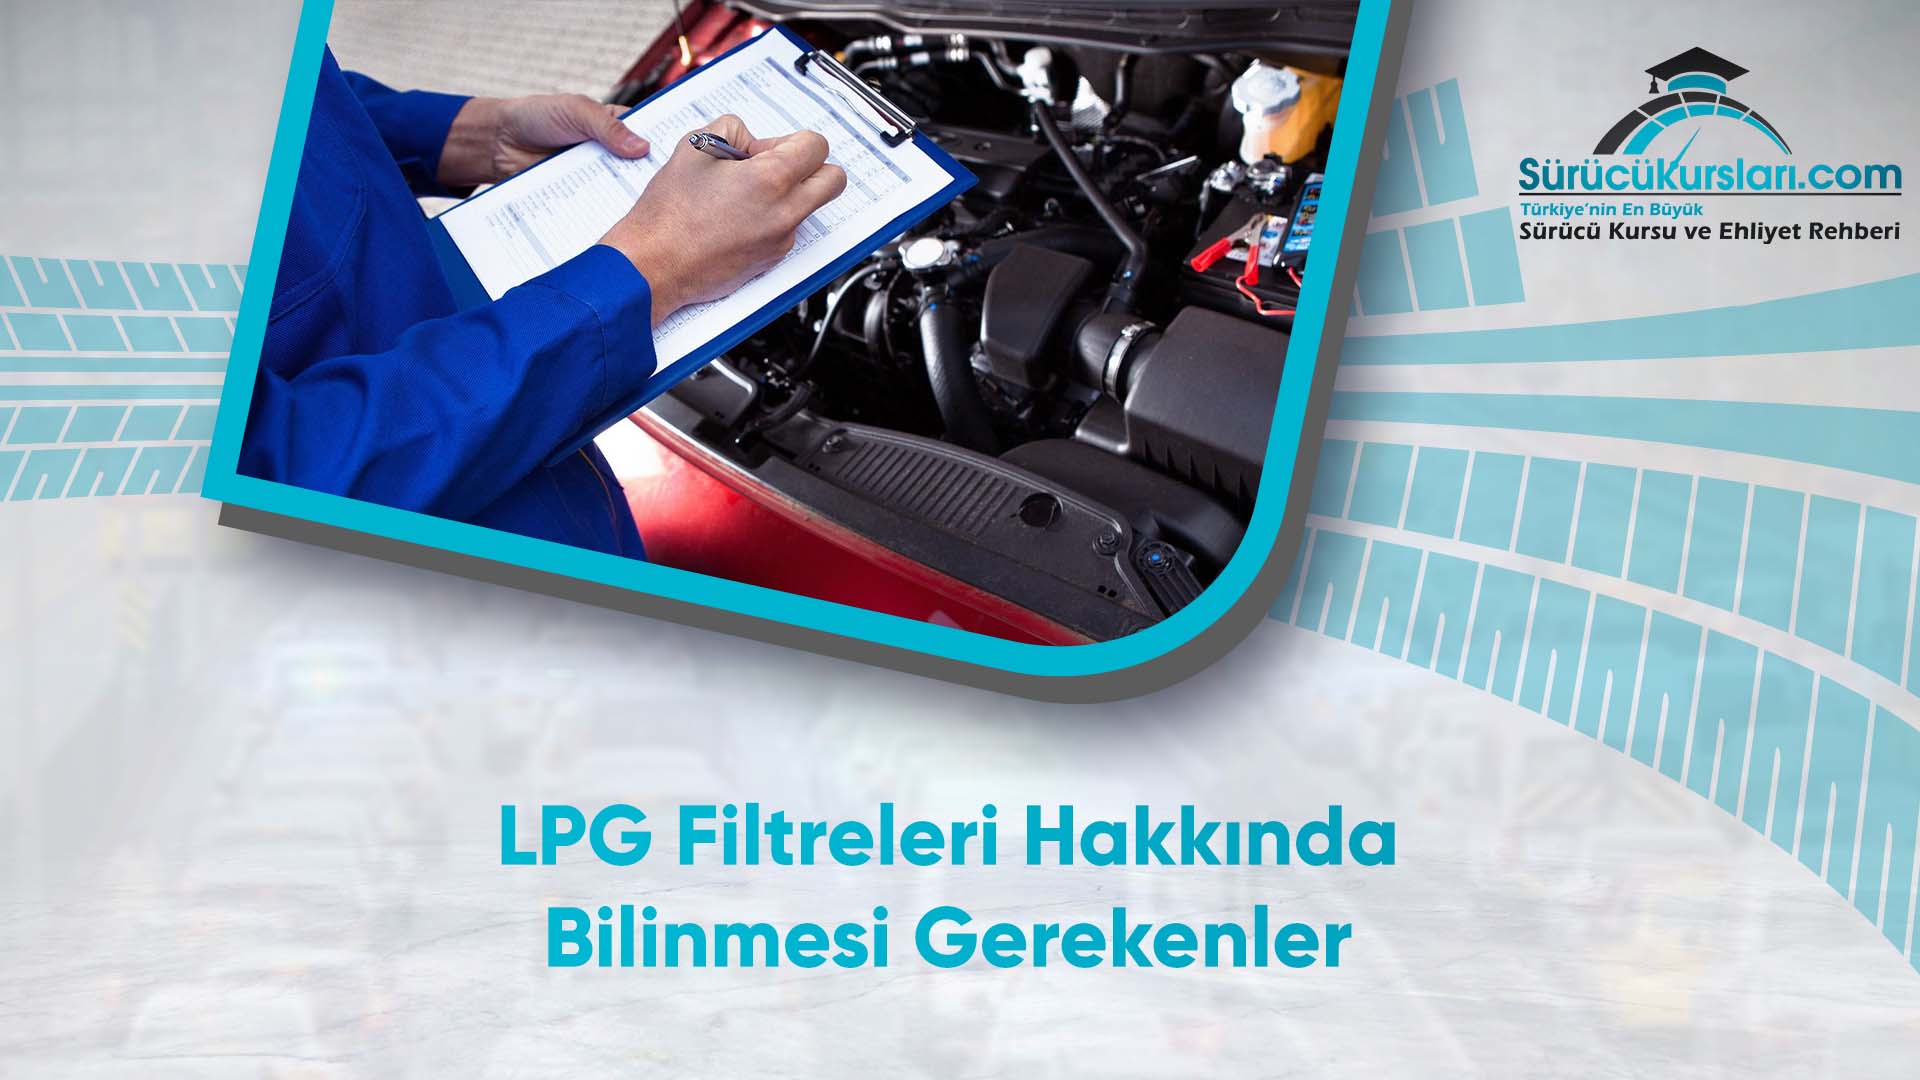 LPG Filtreleri Hakkında Bilinmesi Gerekenler